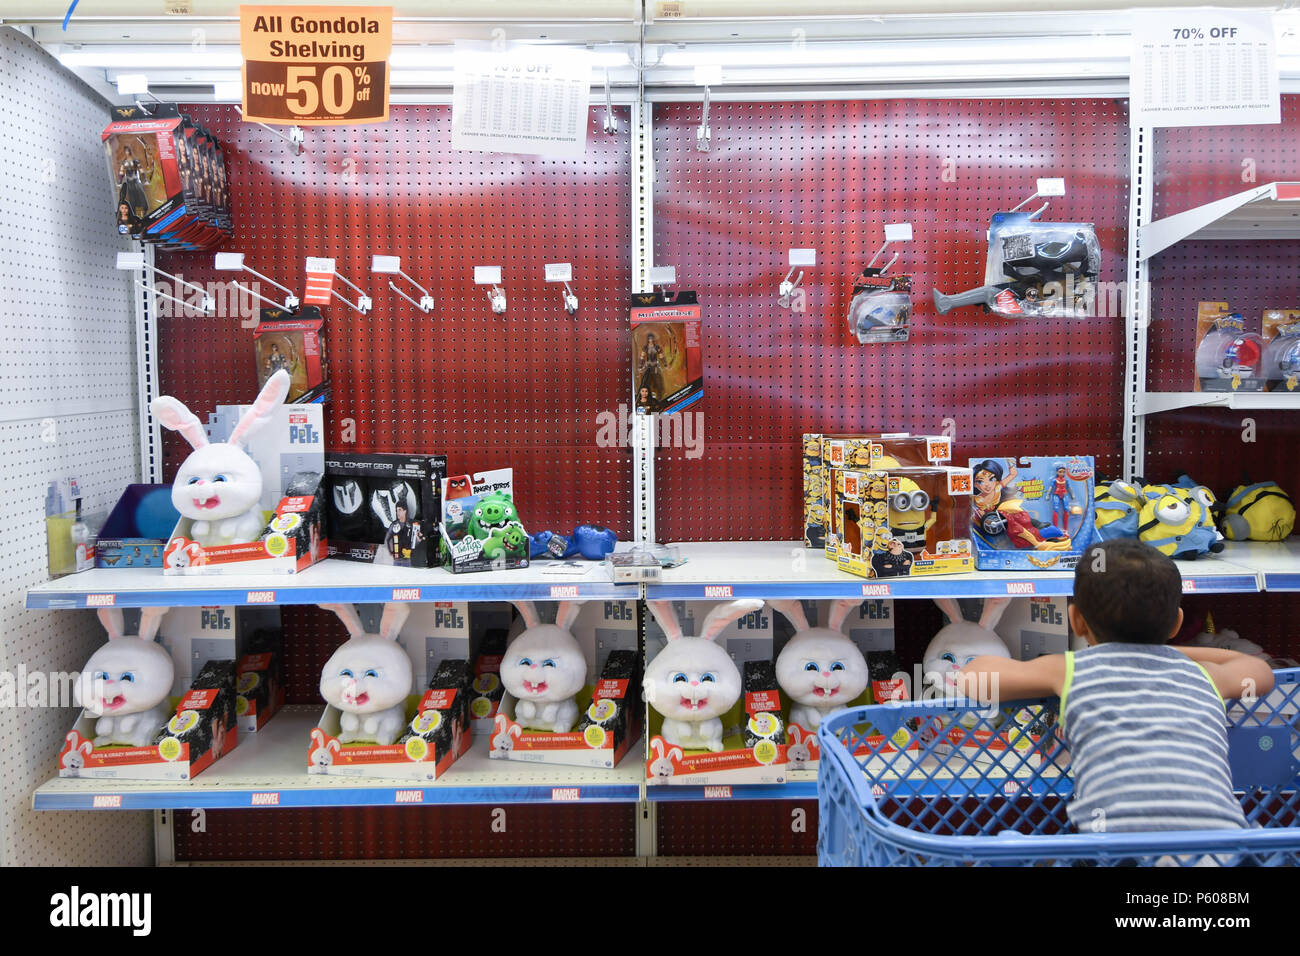 Un garçon regarde les animaux en peluche dans un magasin Toys R Us jours avant sa fermeture programmée. Banque D'Images